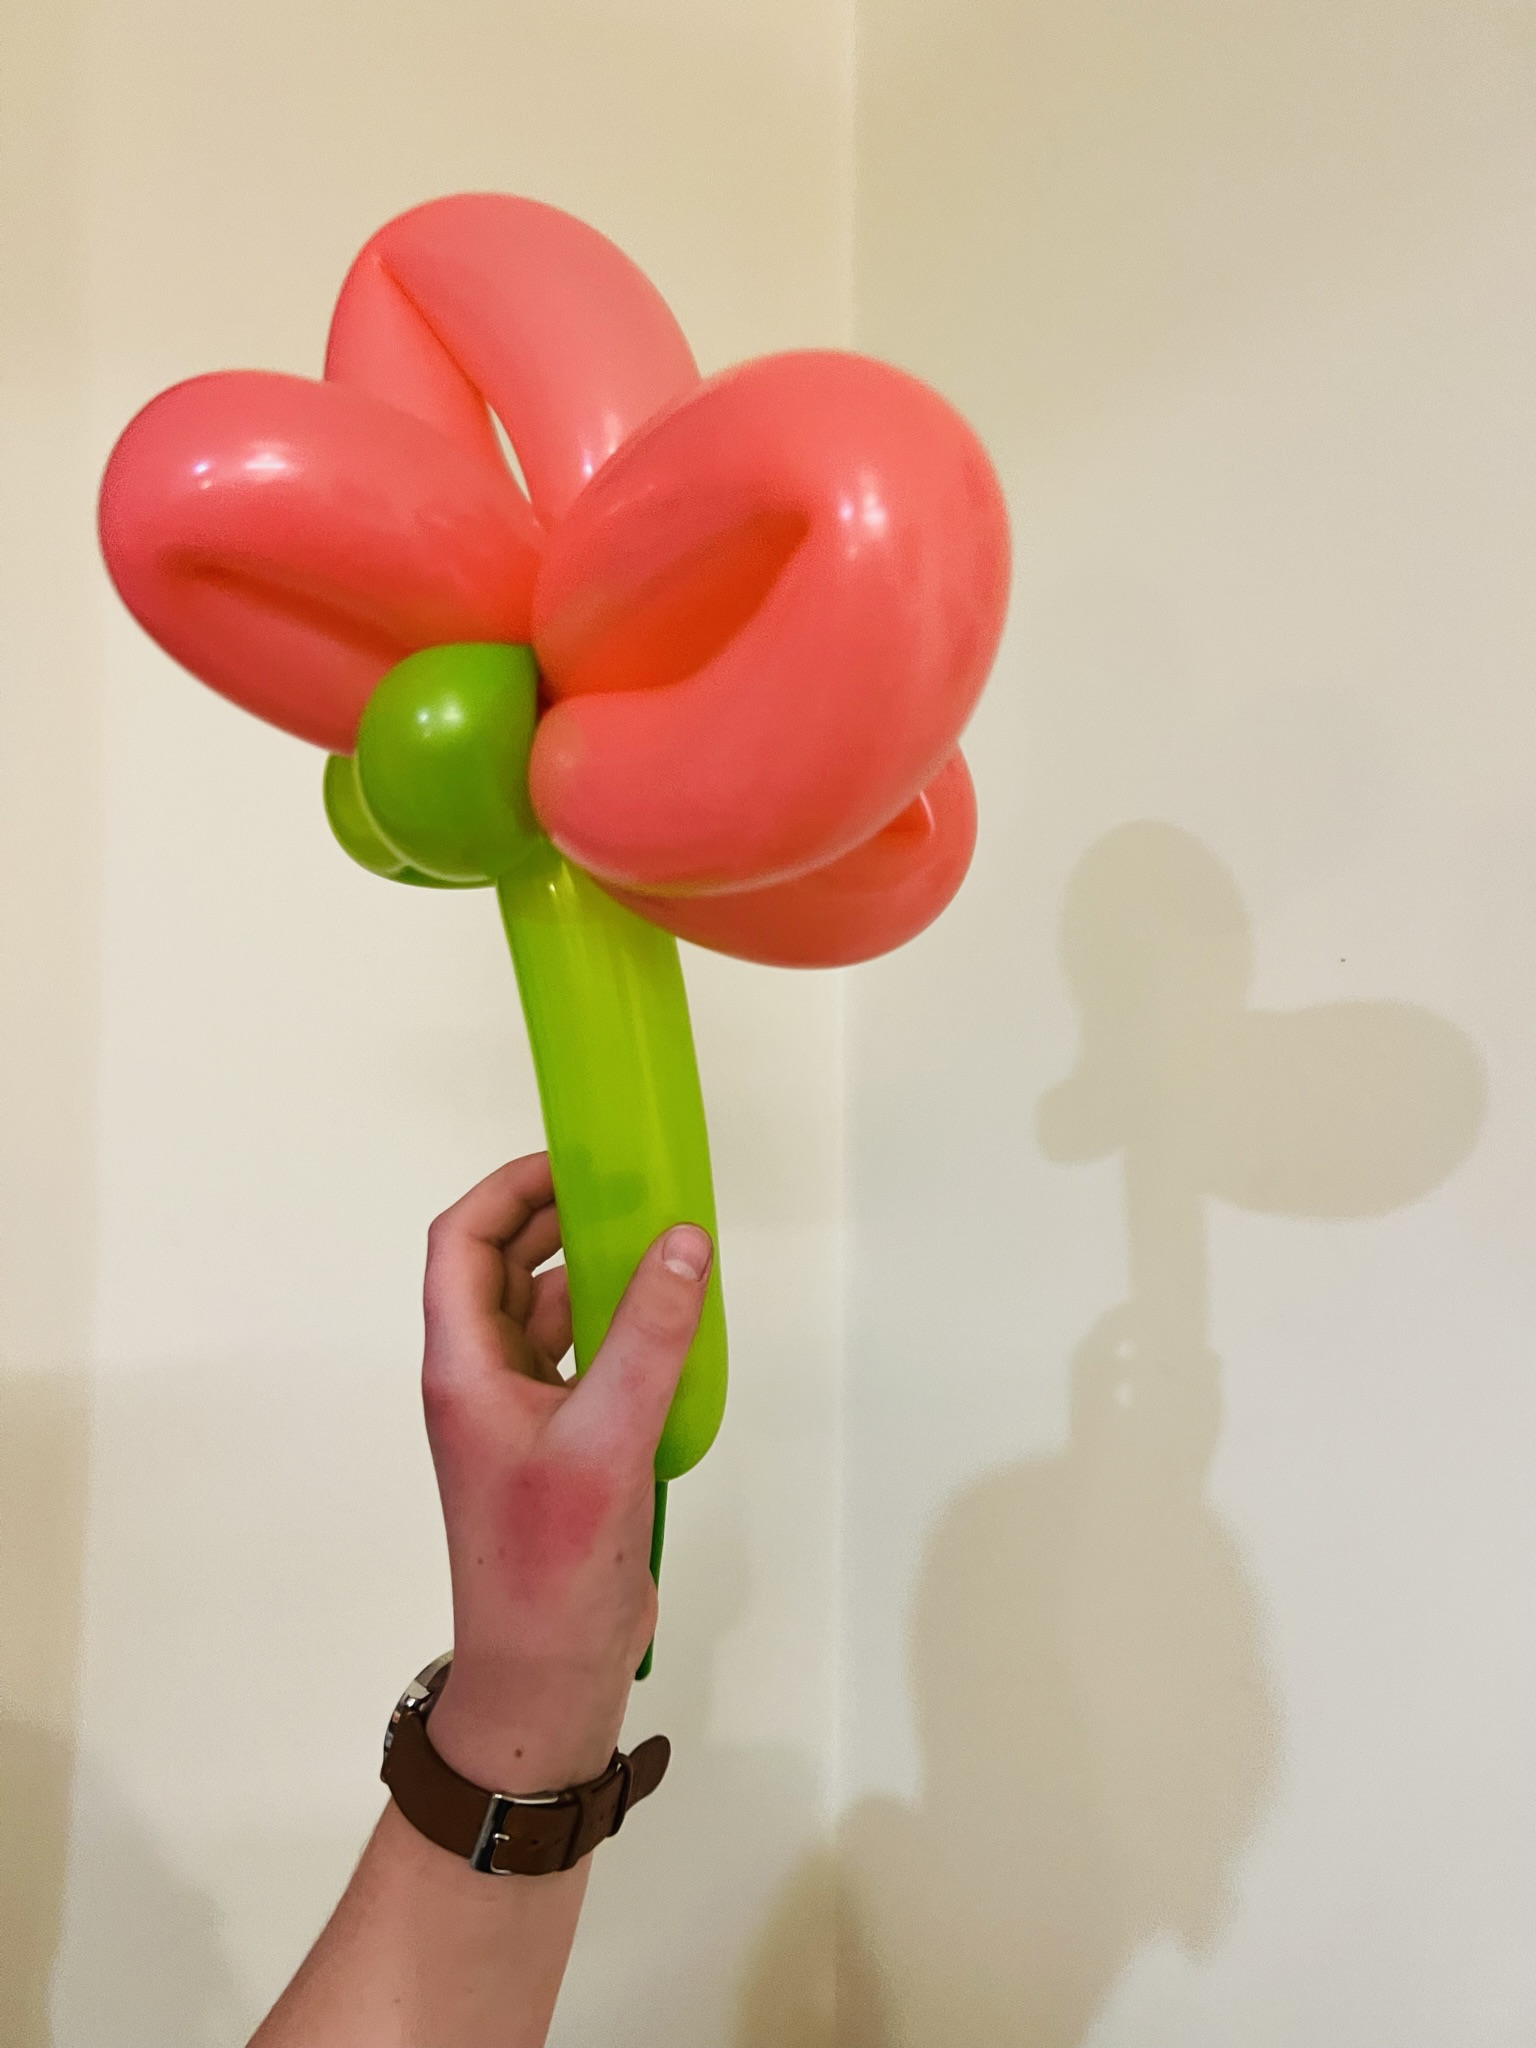 Balloon Flower